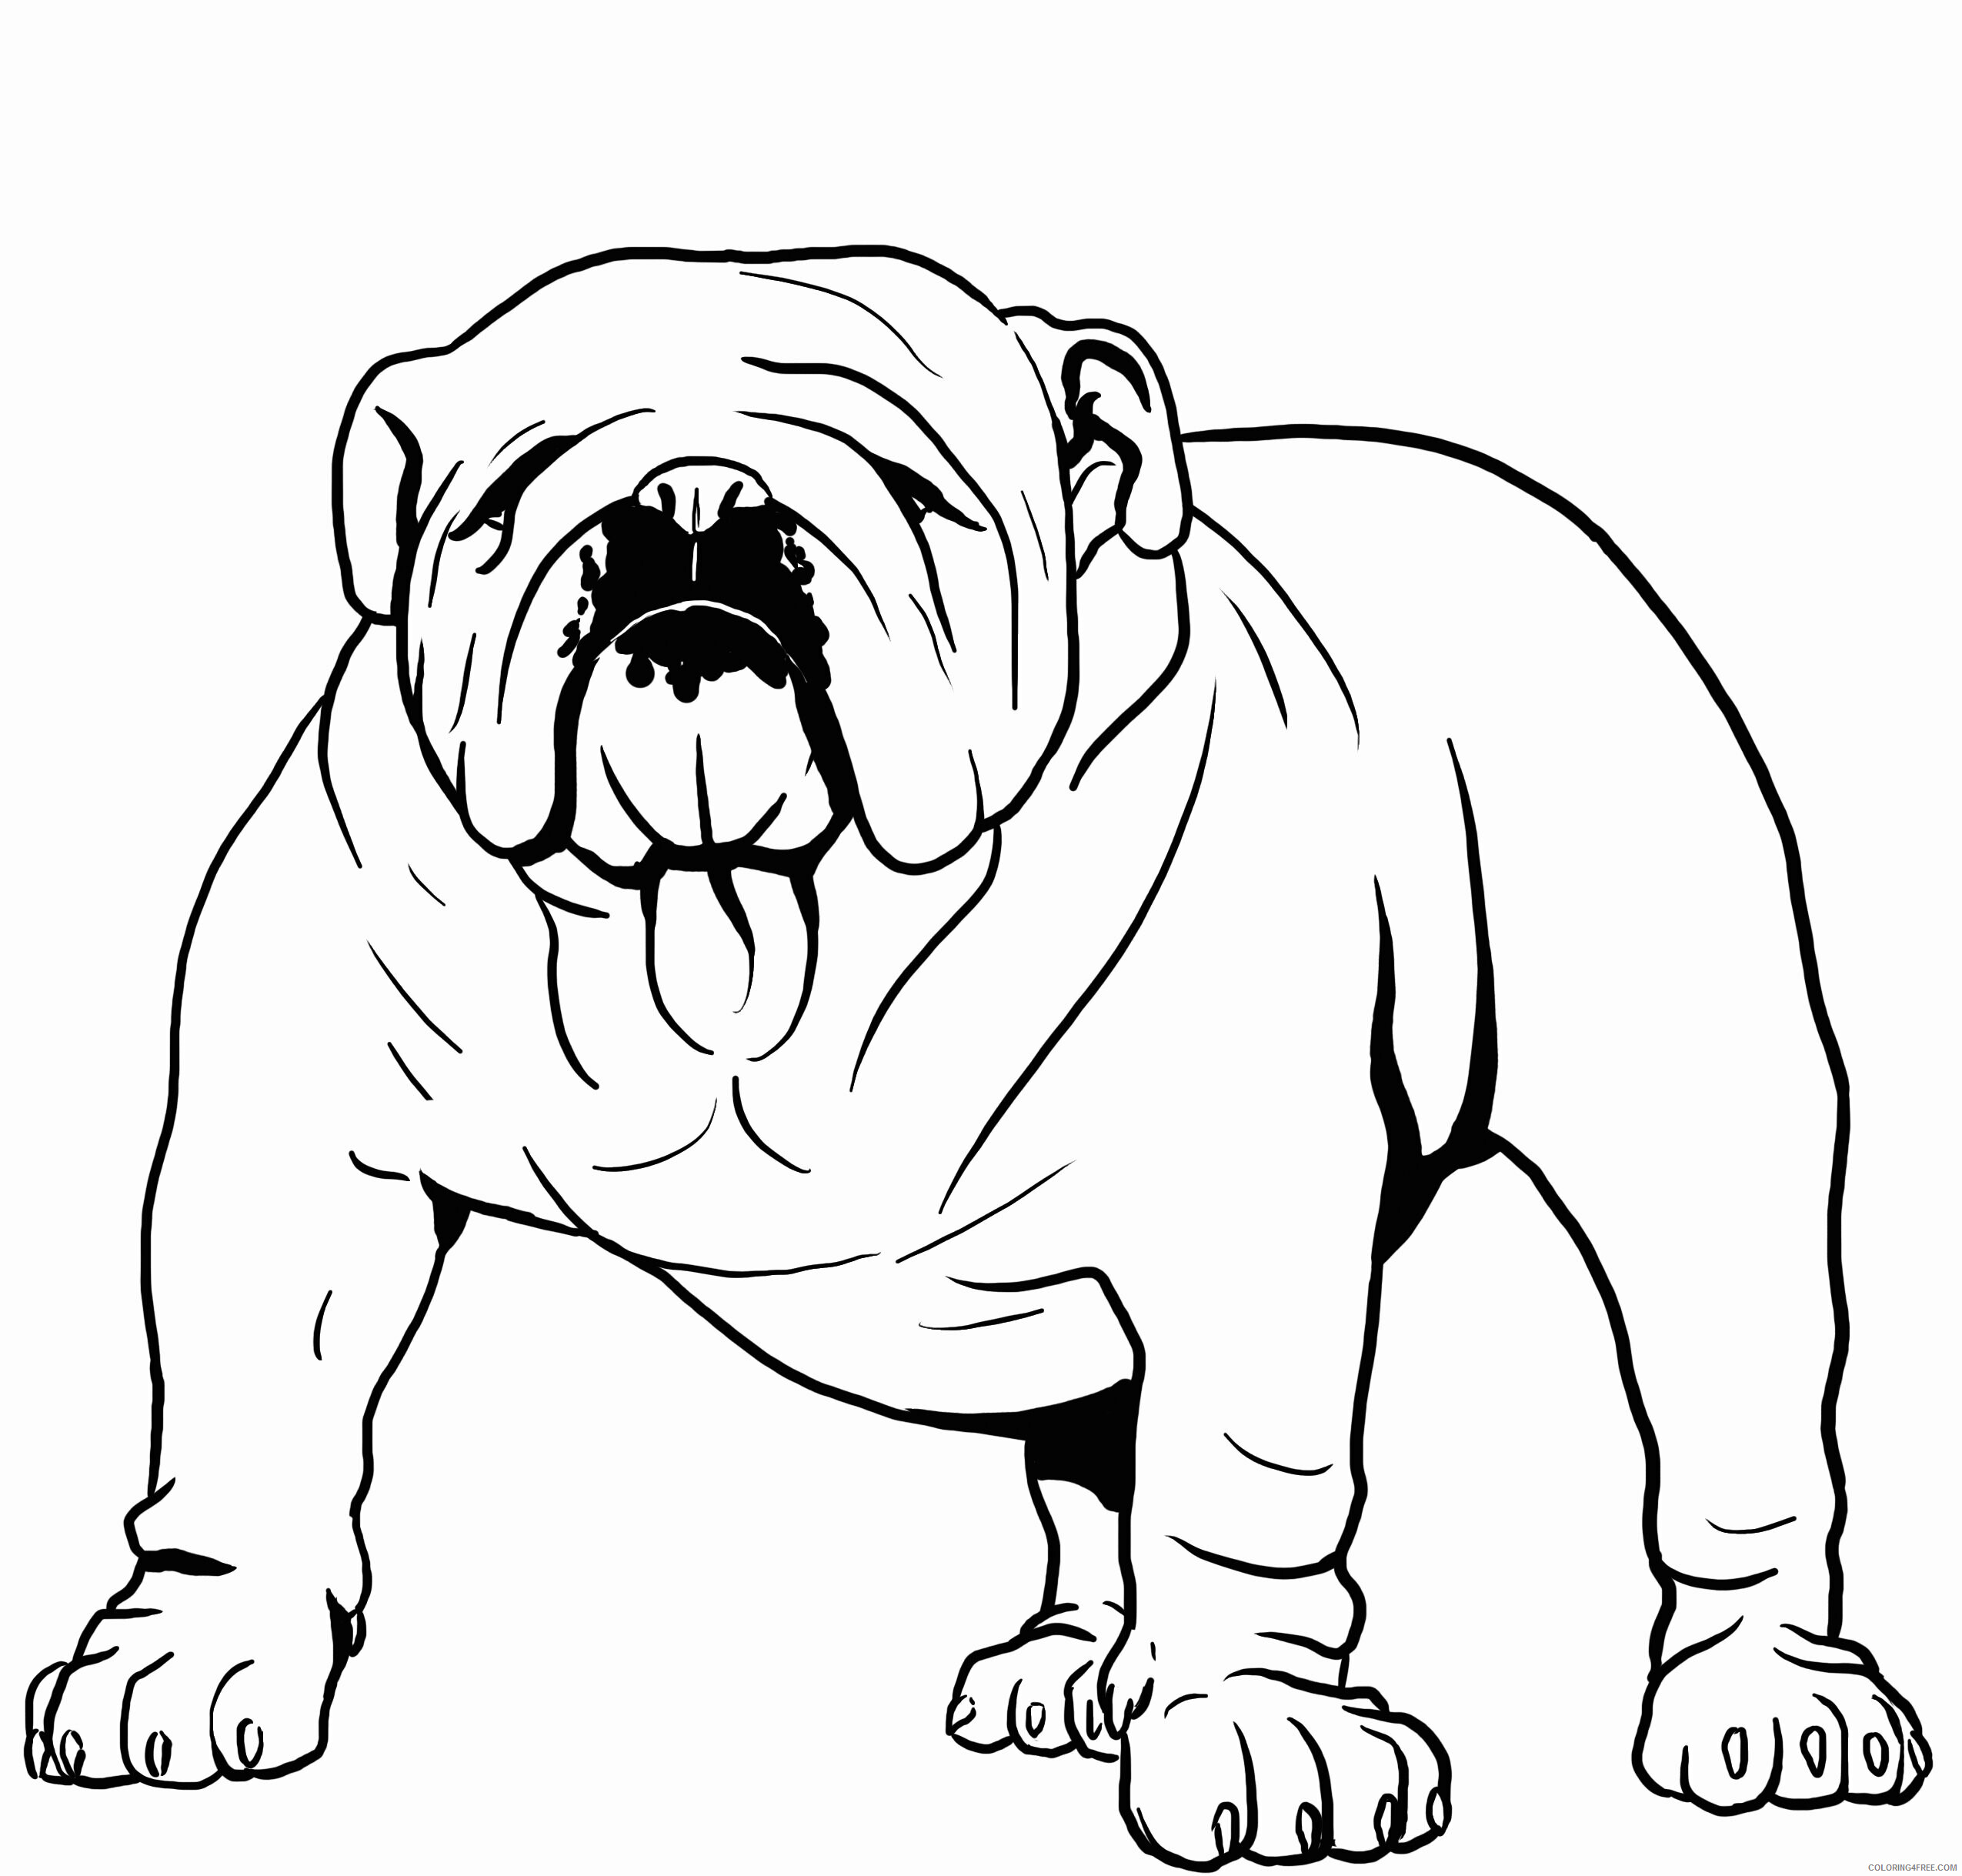 Bulldog Coloring Pages Animal Printable Sheets Bulldog 2021 0612 Coloring4free